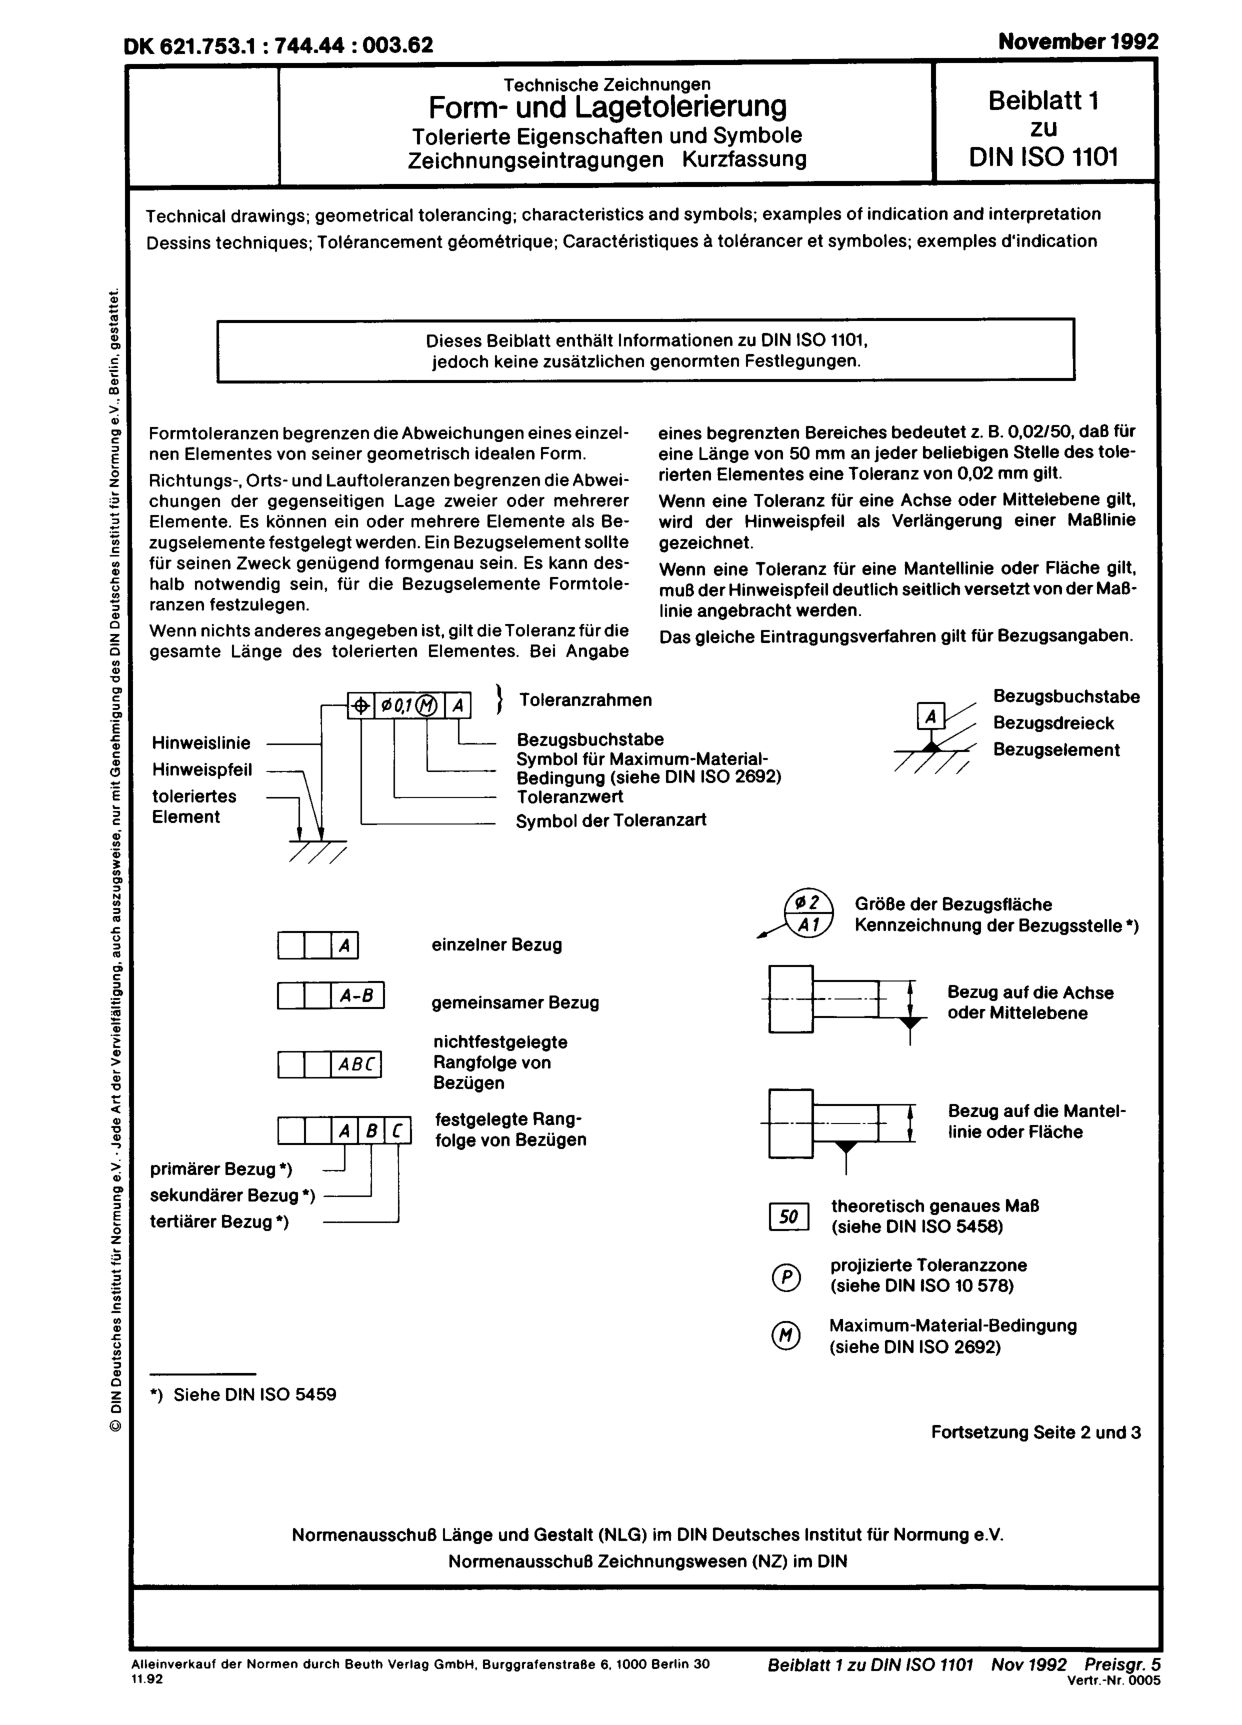 DIN ISO 1101 Beiblatt 1:1992-11封面图